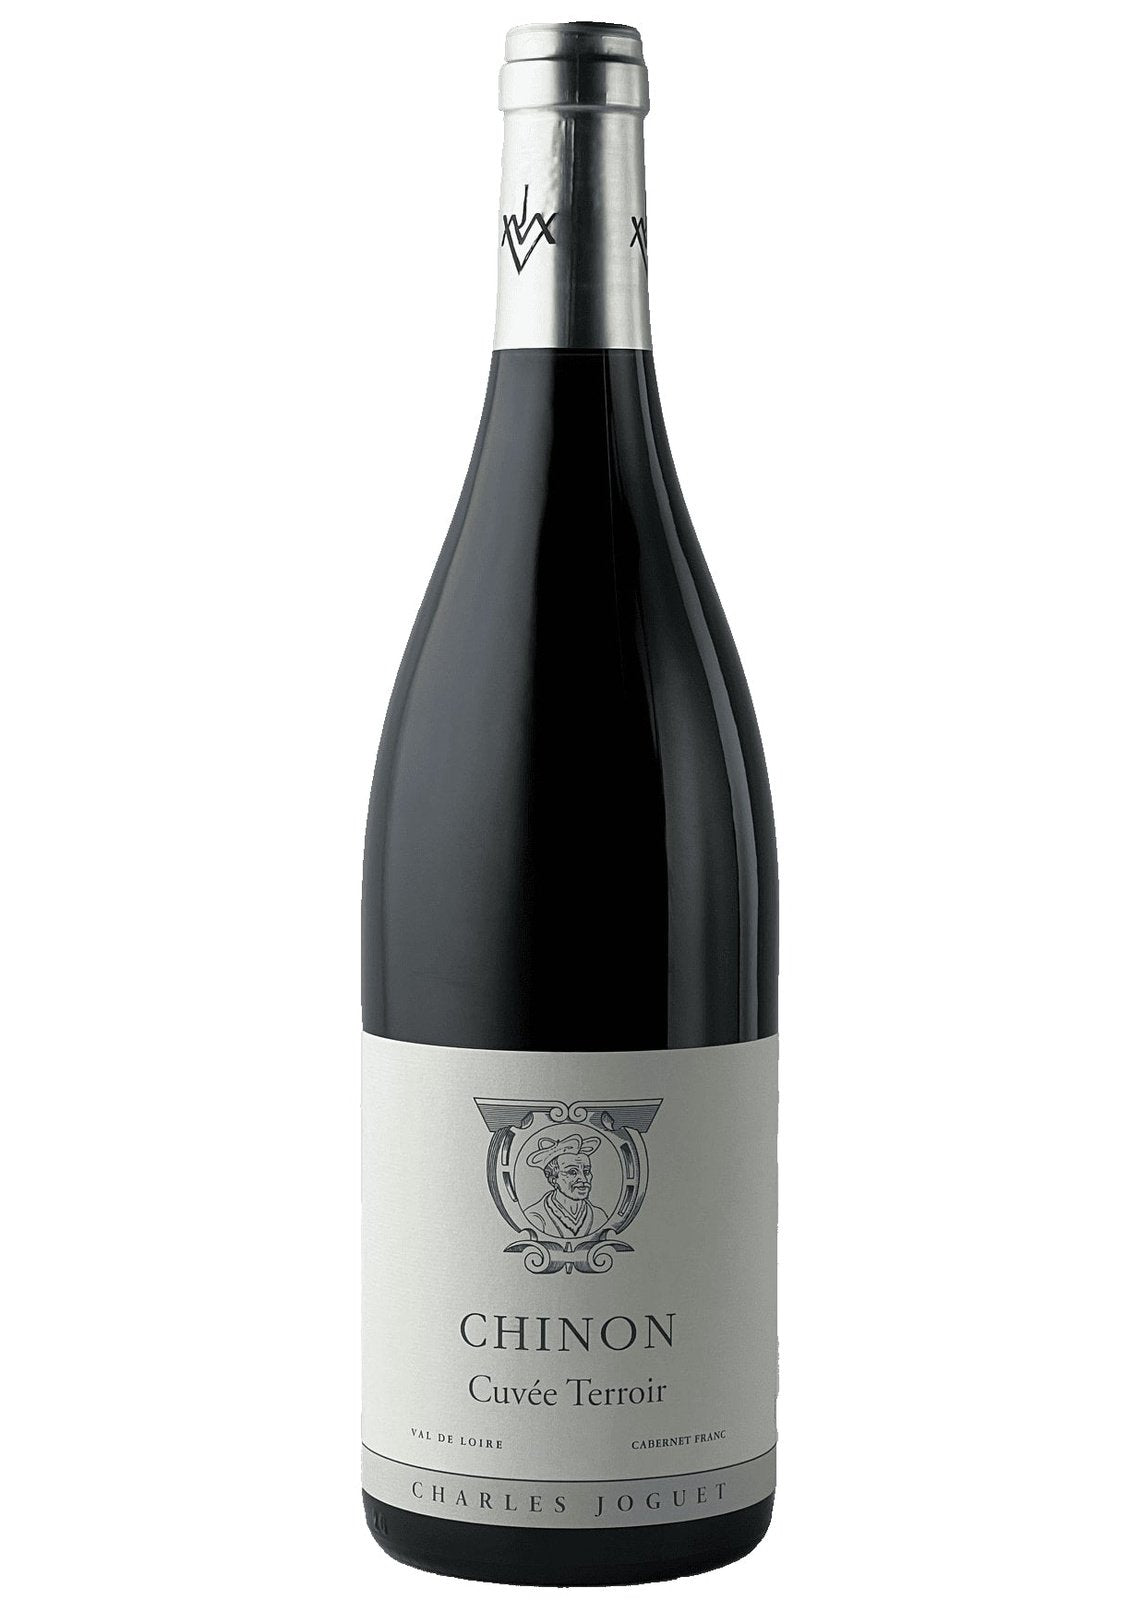 CHARLES JOGUET Chinon Cuvee Terroir 2016